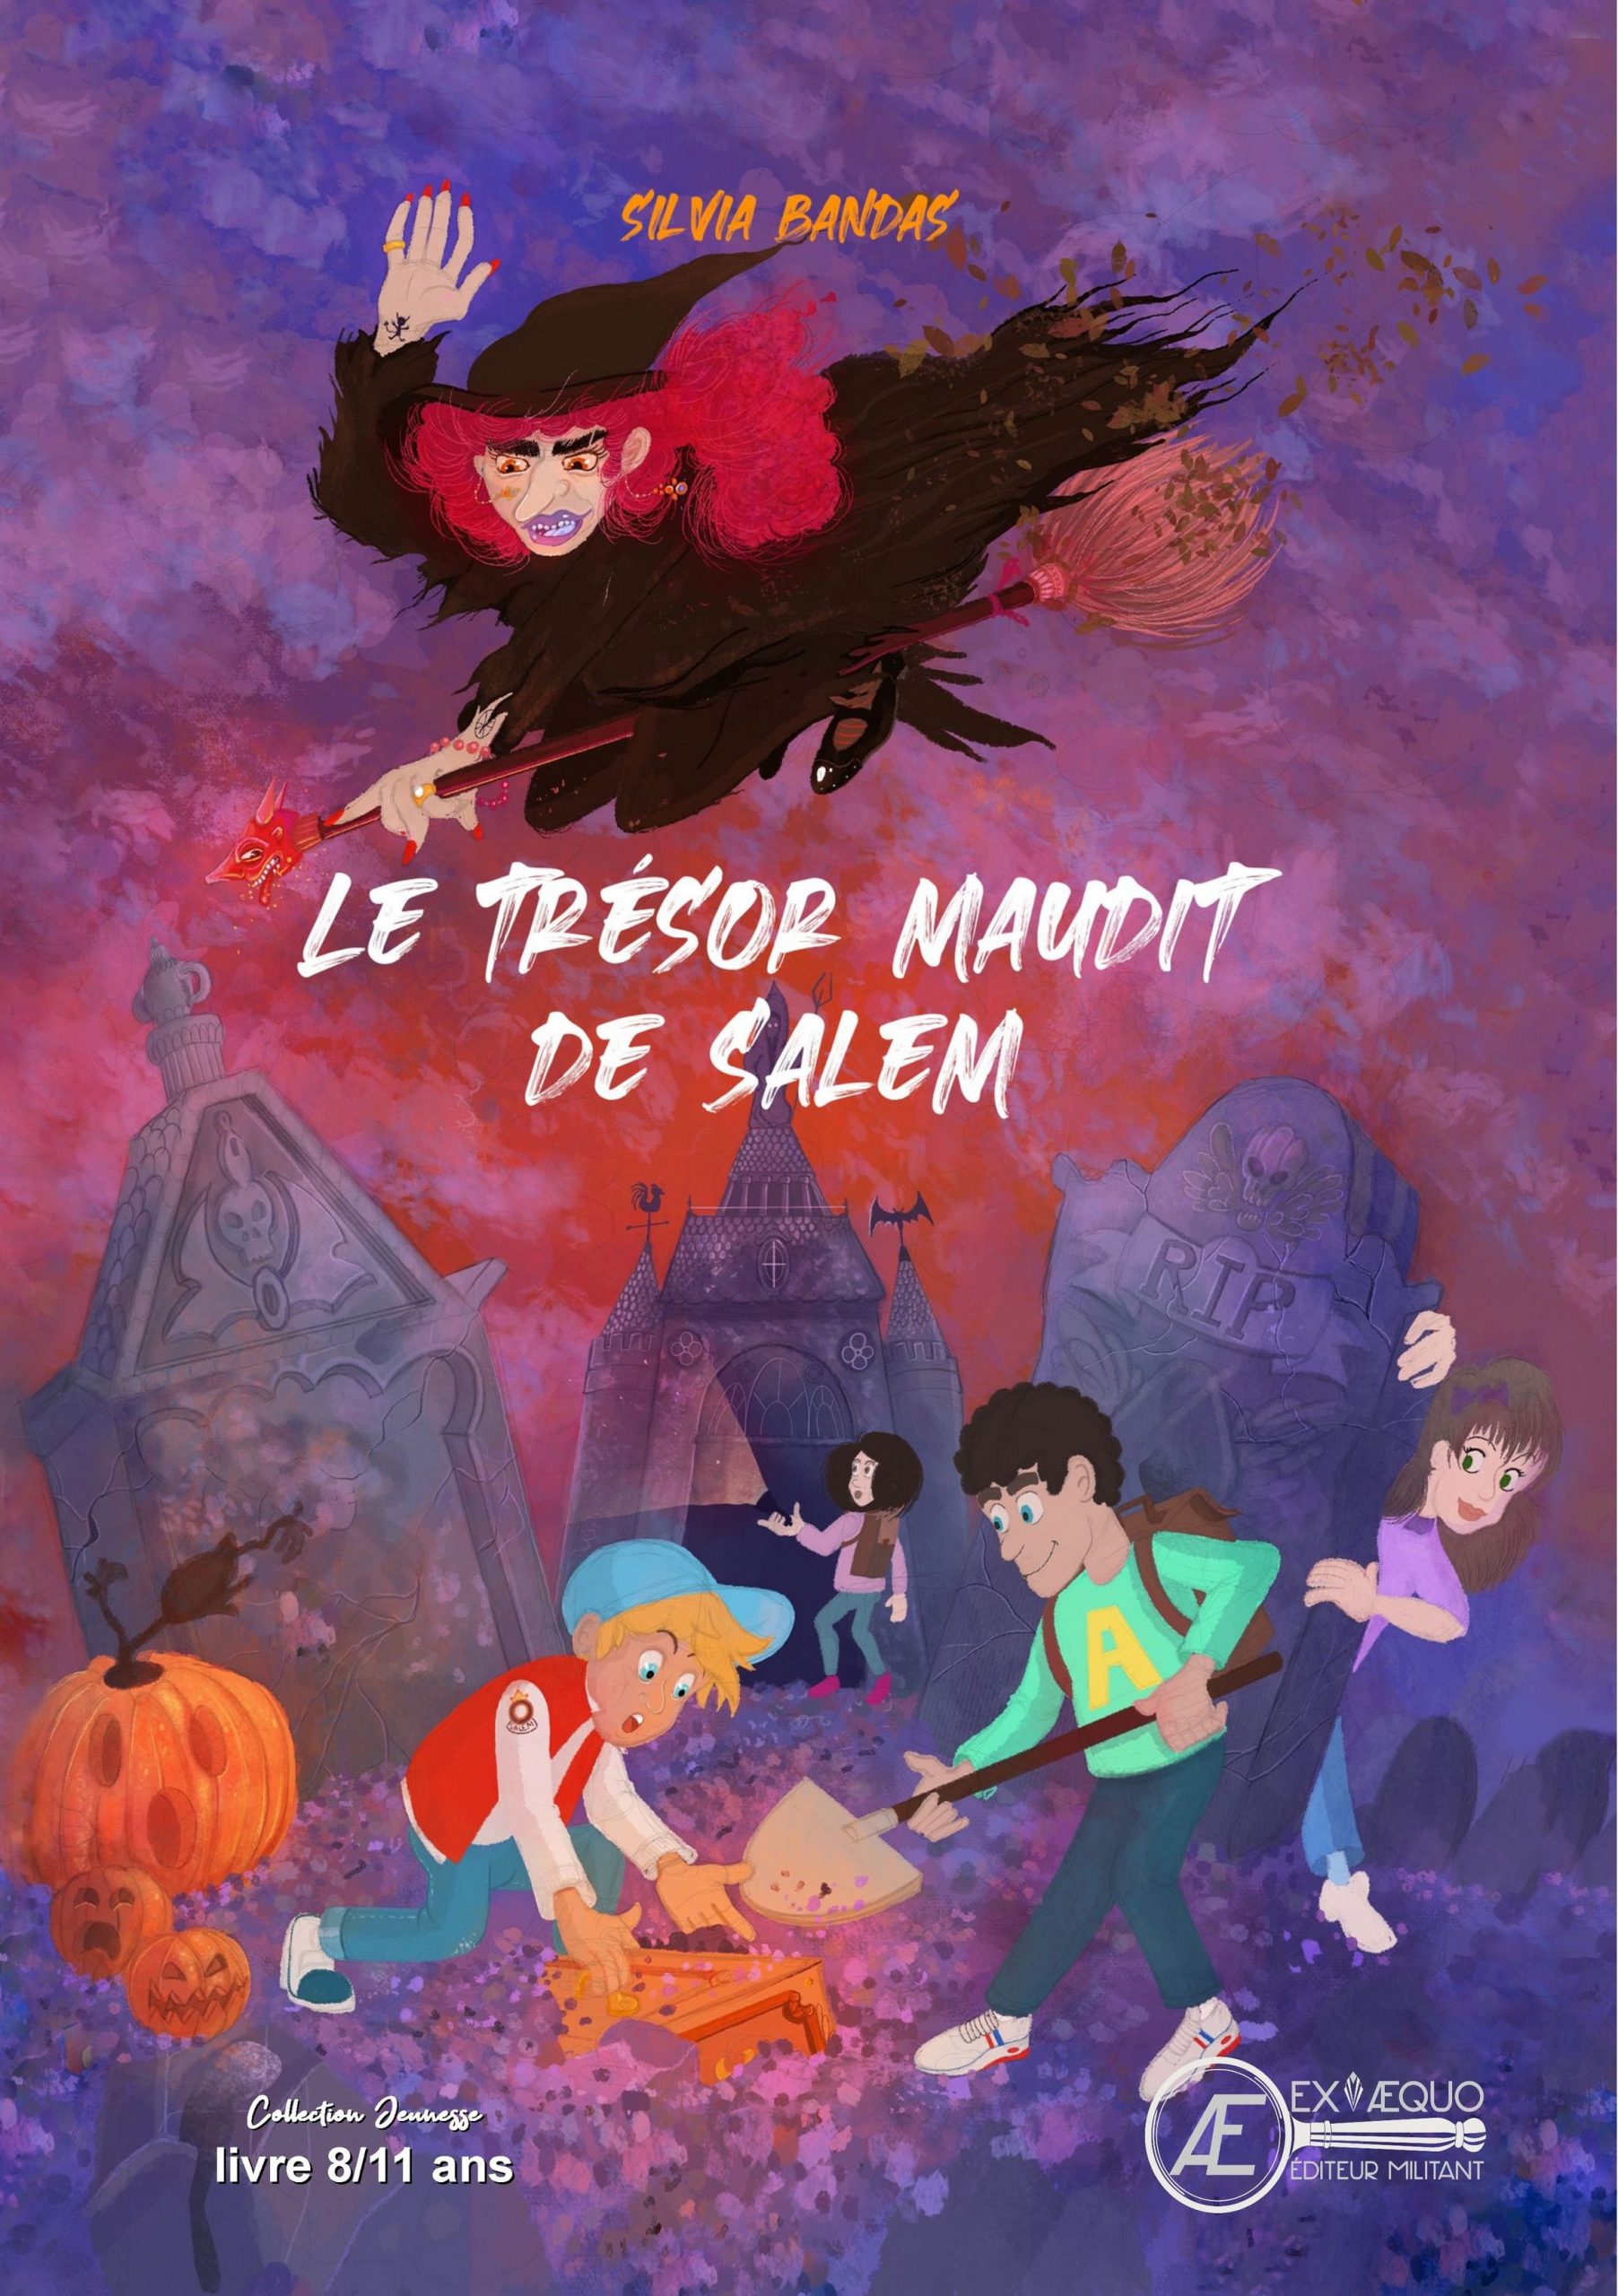 You are currently viewing Le trésor maudit de Salem, de Silvia Bandas